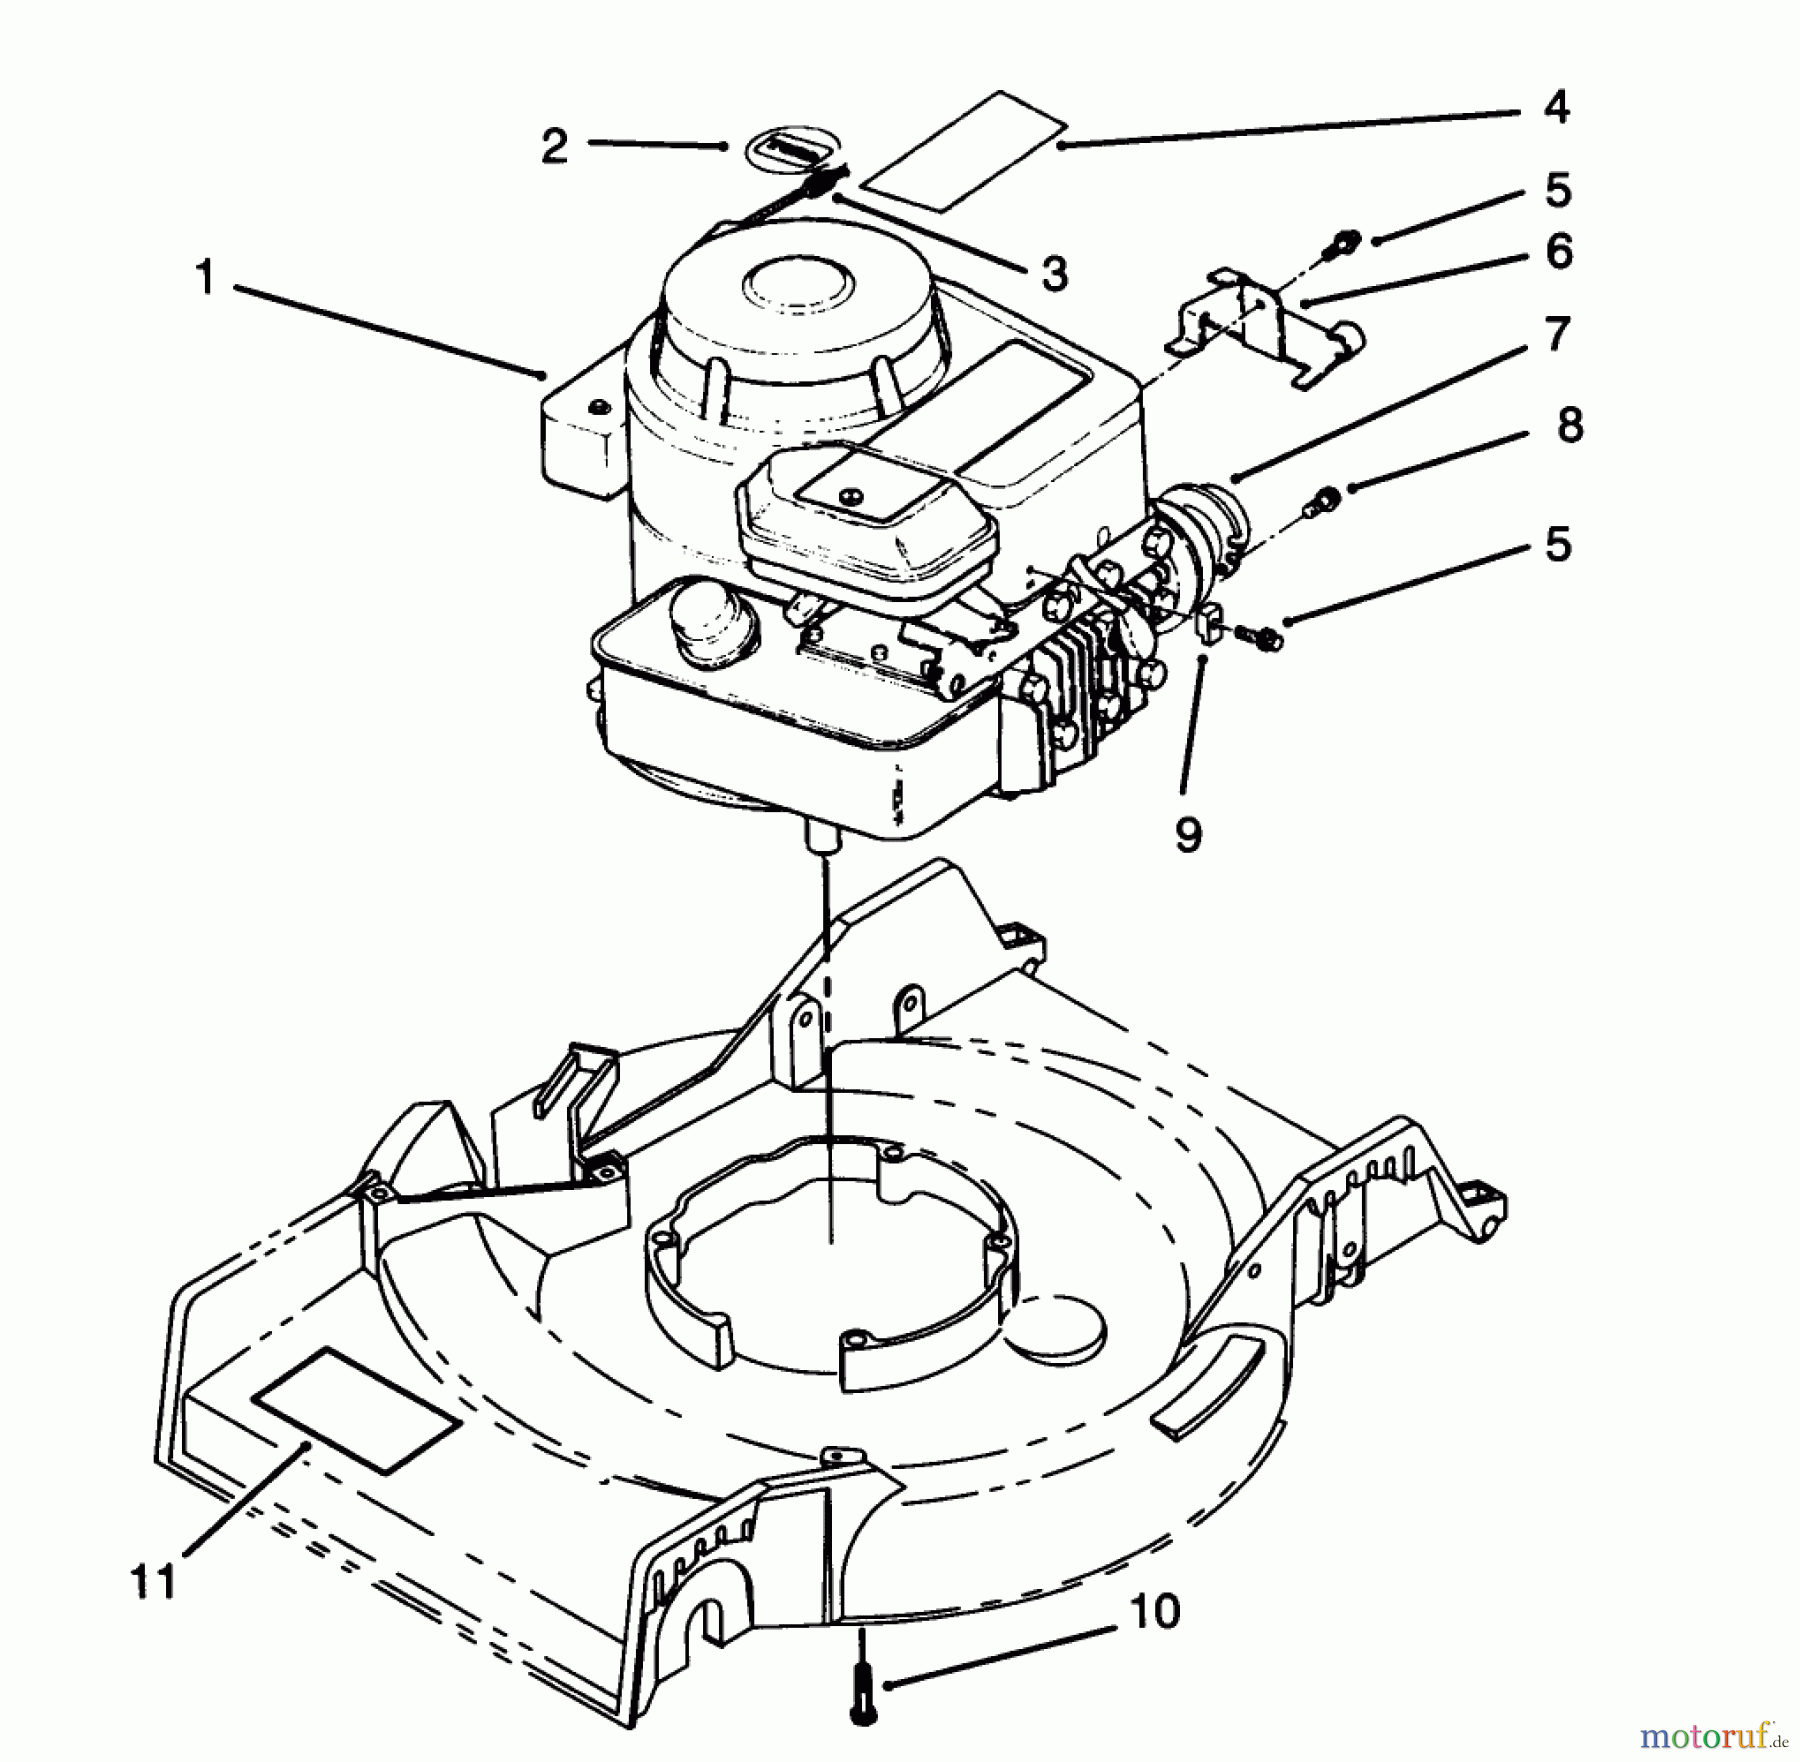  Toro Neu Mowers, Walk-Behind Seite 1 16410 - Toro Lawnmower, 1993 (3900001-3999999) ENGINE ASSEMBLY